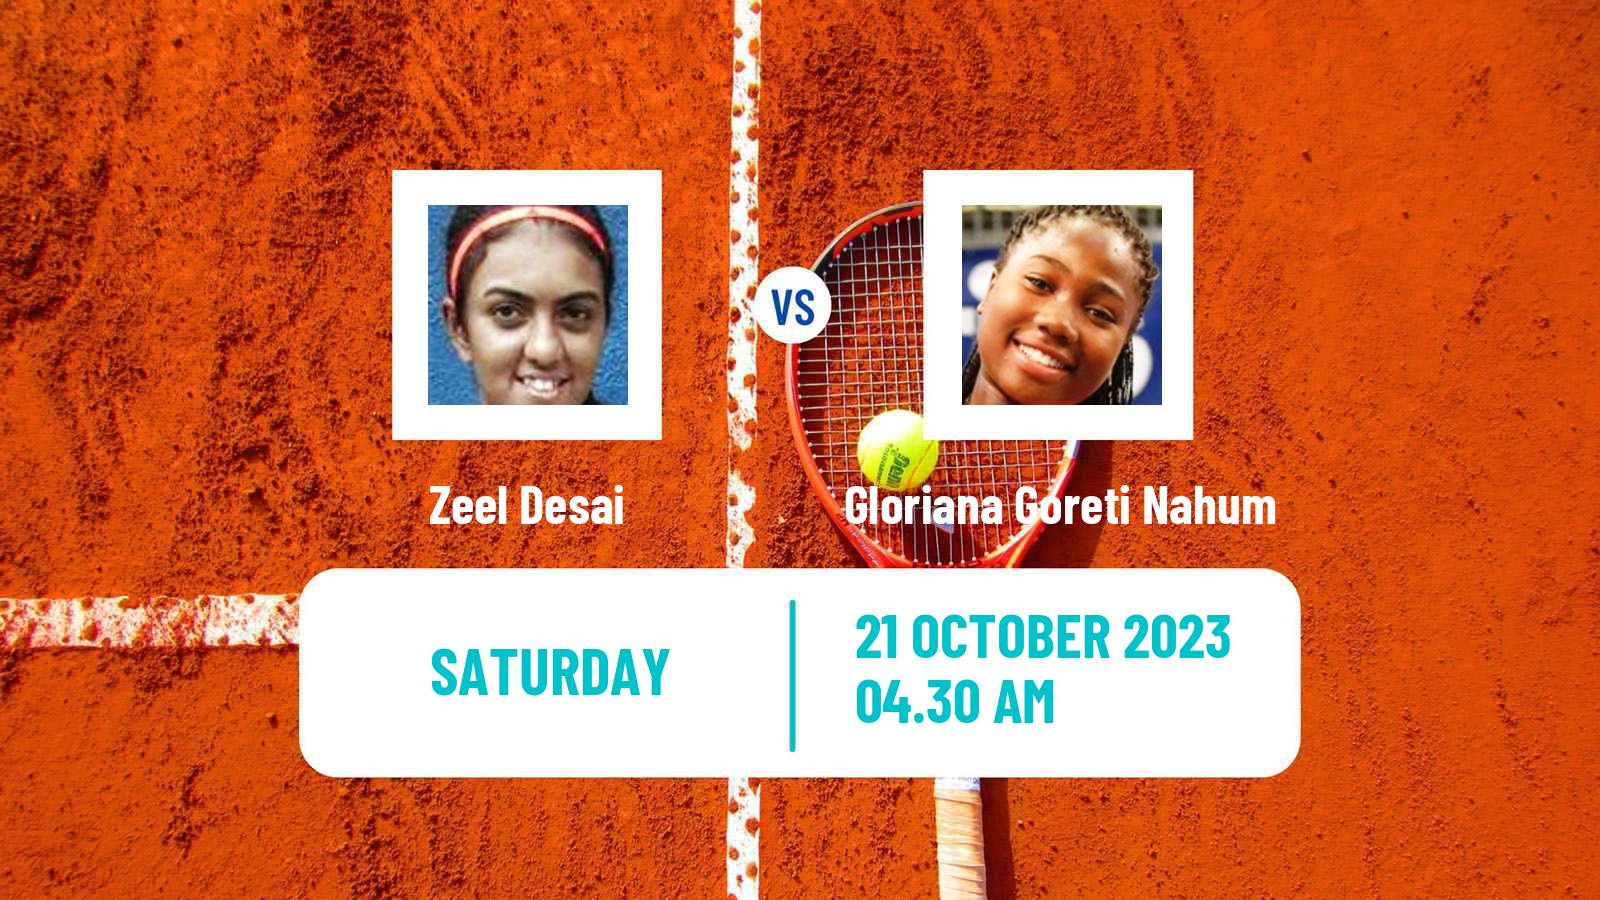 Tennis ITF W15 Monastir 37 Women Zeel Desai - Gloriana Goreti Nahum